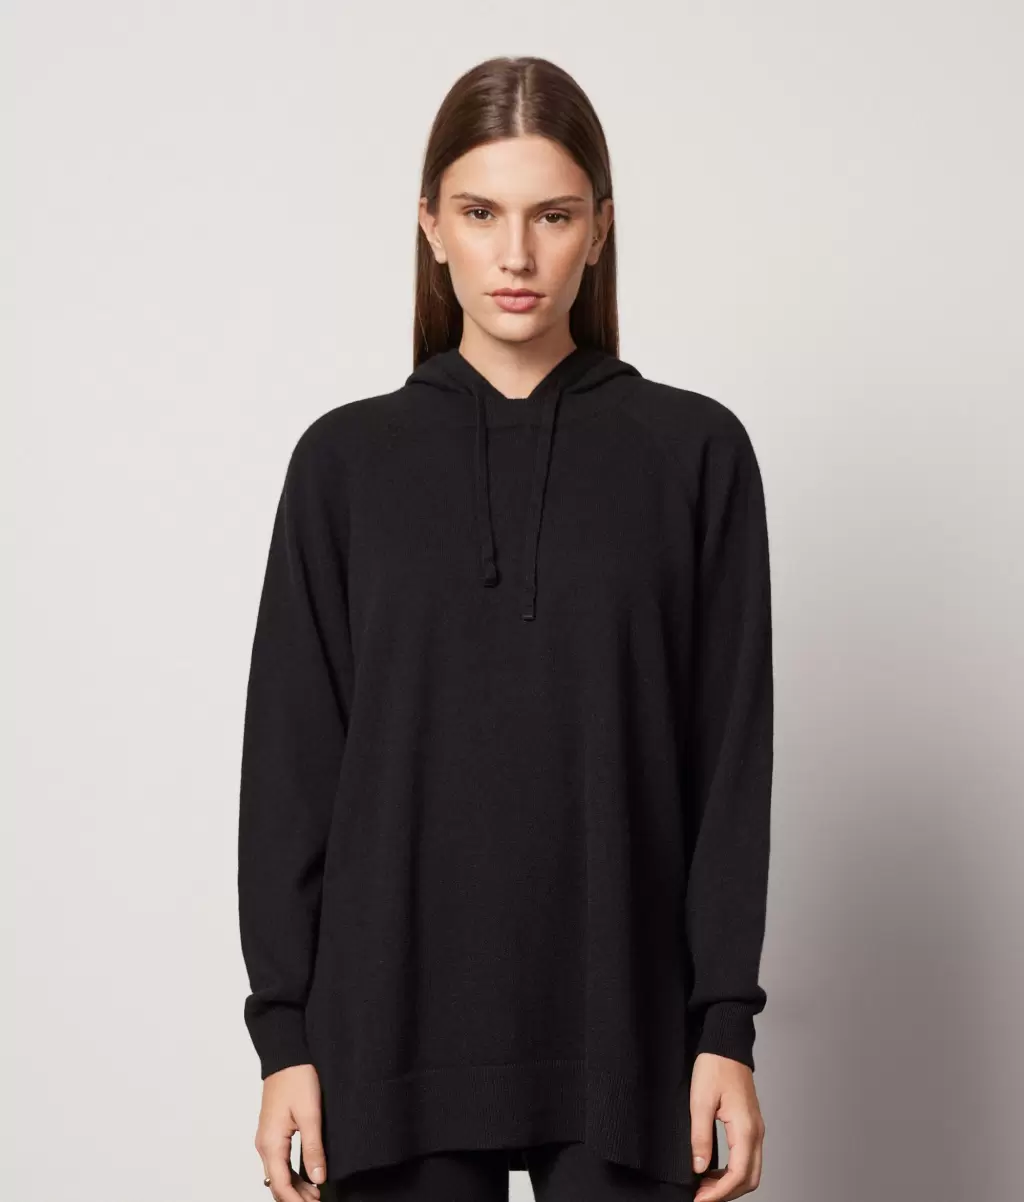 Black Długa Bluza Z Kapturem Z Kaszmiru Ultrasoft Falconeri Kobieta Swetry Z Okrągłym Dekoltem - 1